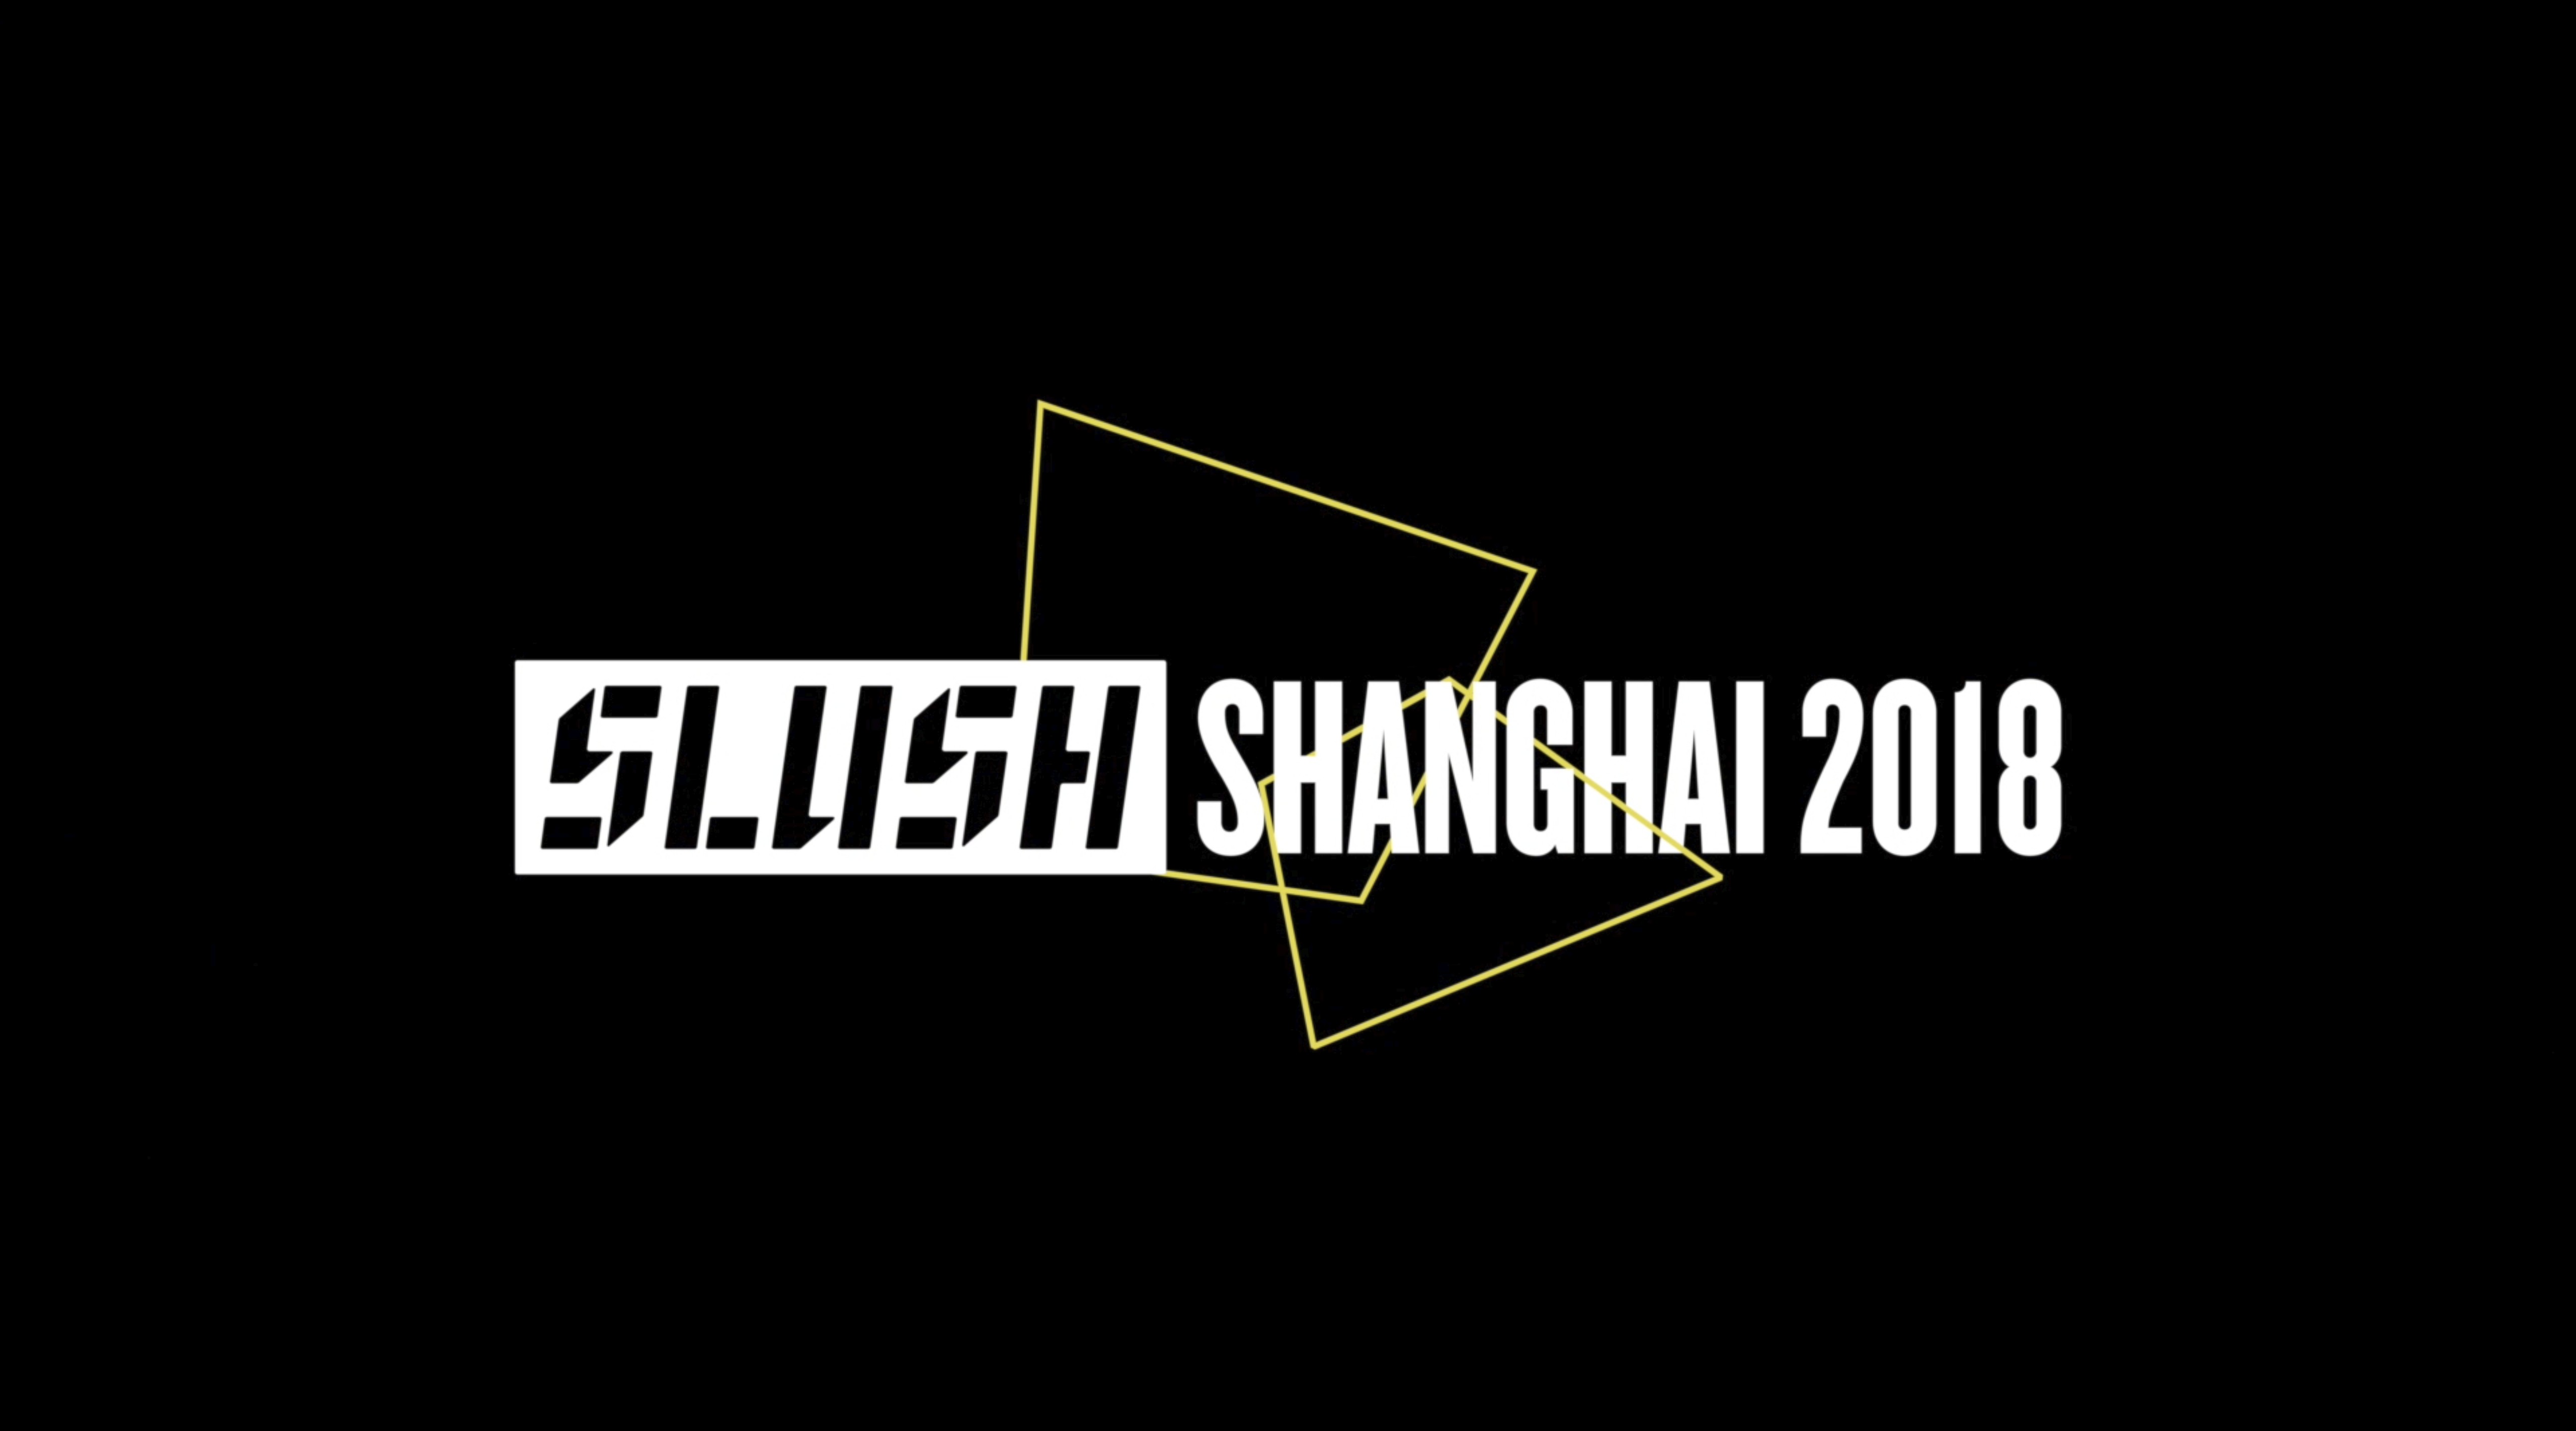 SLUSH SHANGHAI 2018 